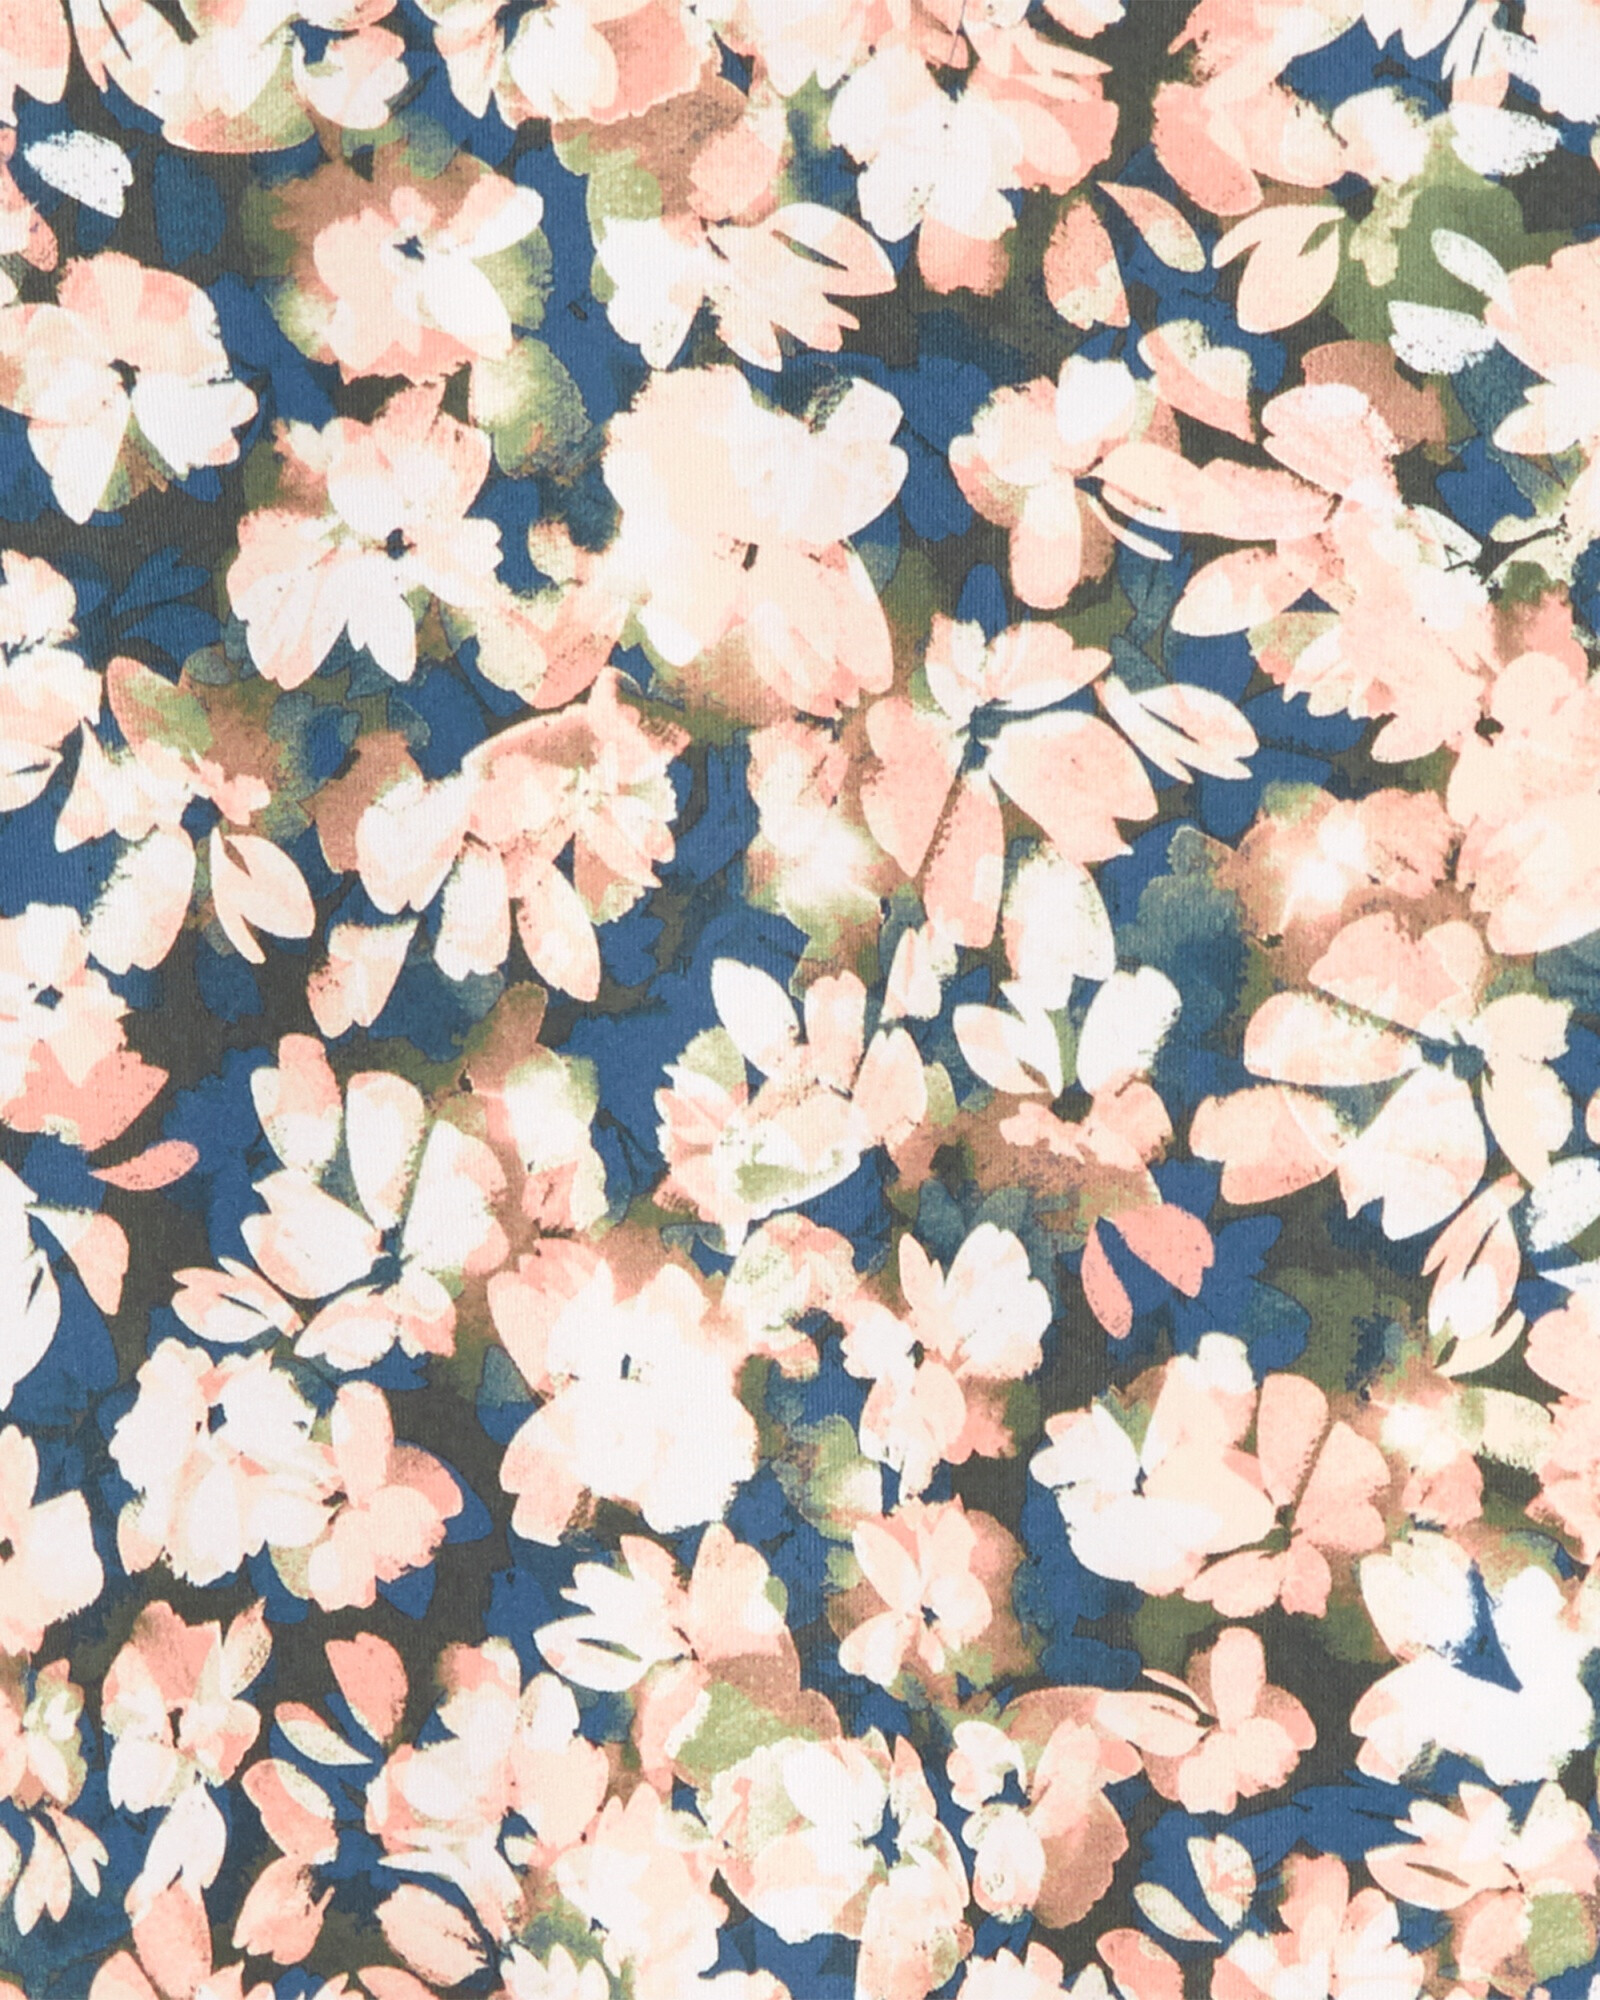 Blusa de poliéster manga larga anudada diseño flores 0